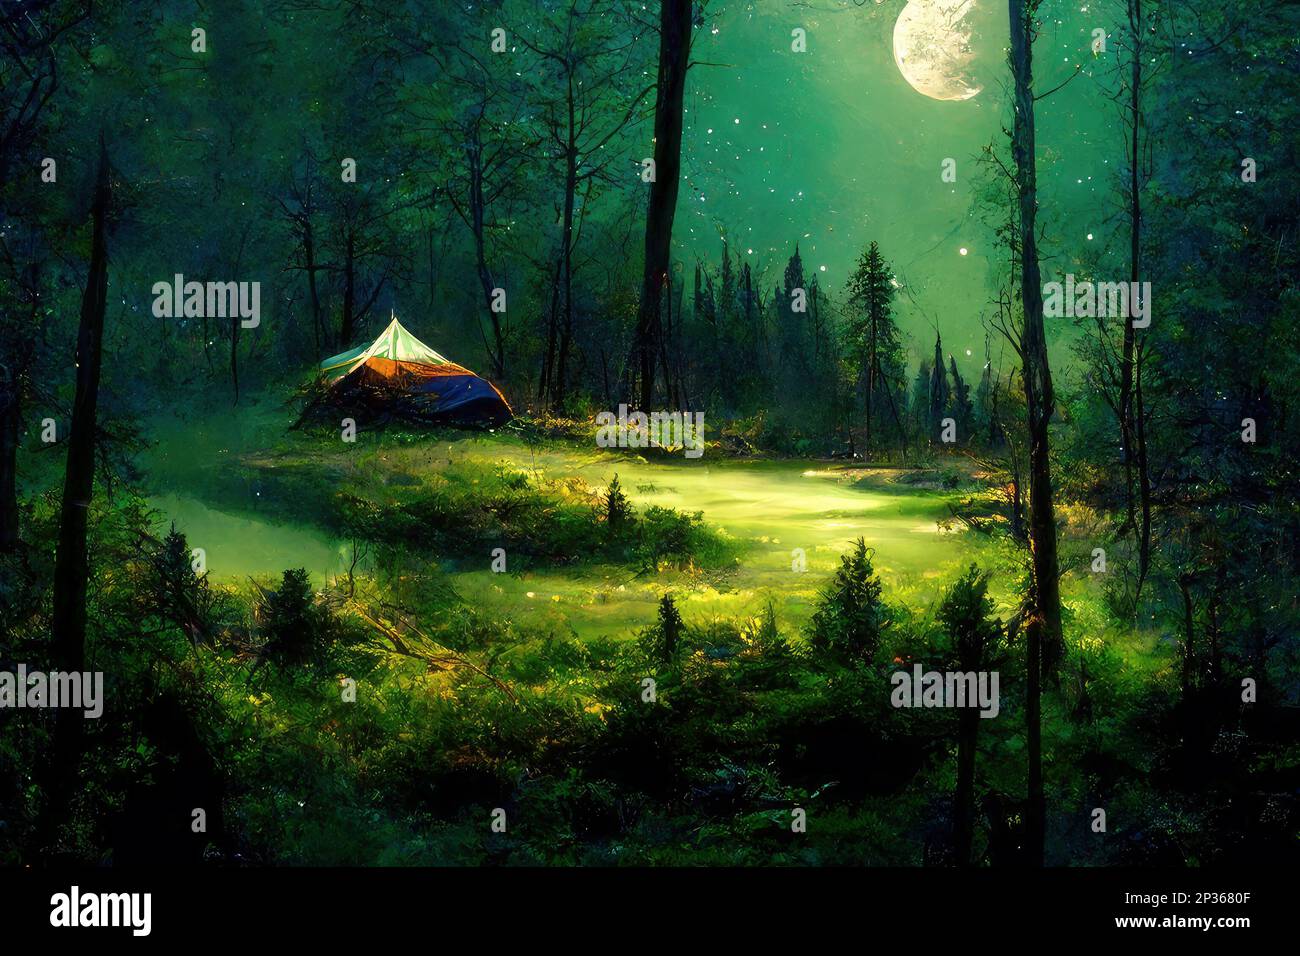 Zelt in einer wunderschönen Nachtlandschaft, beleuchtet vom Mondlicht.  Digitale Kunst Stockfotografie - Alamy